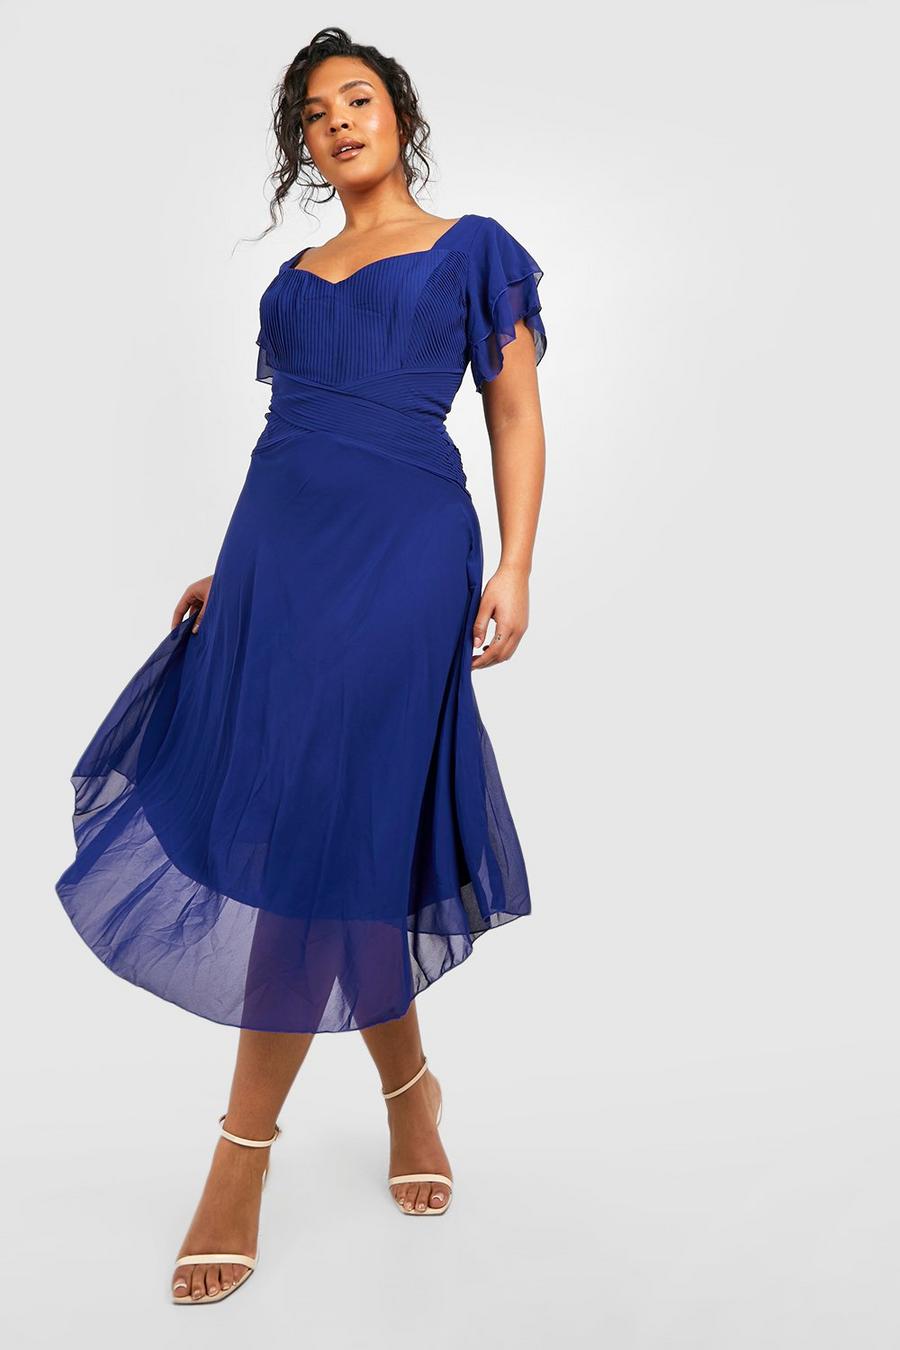 נייבי blu oltremare שמלת שיפון מידי לאירועים עם שרוולי מלאך, מידות גדולות